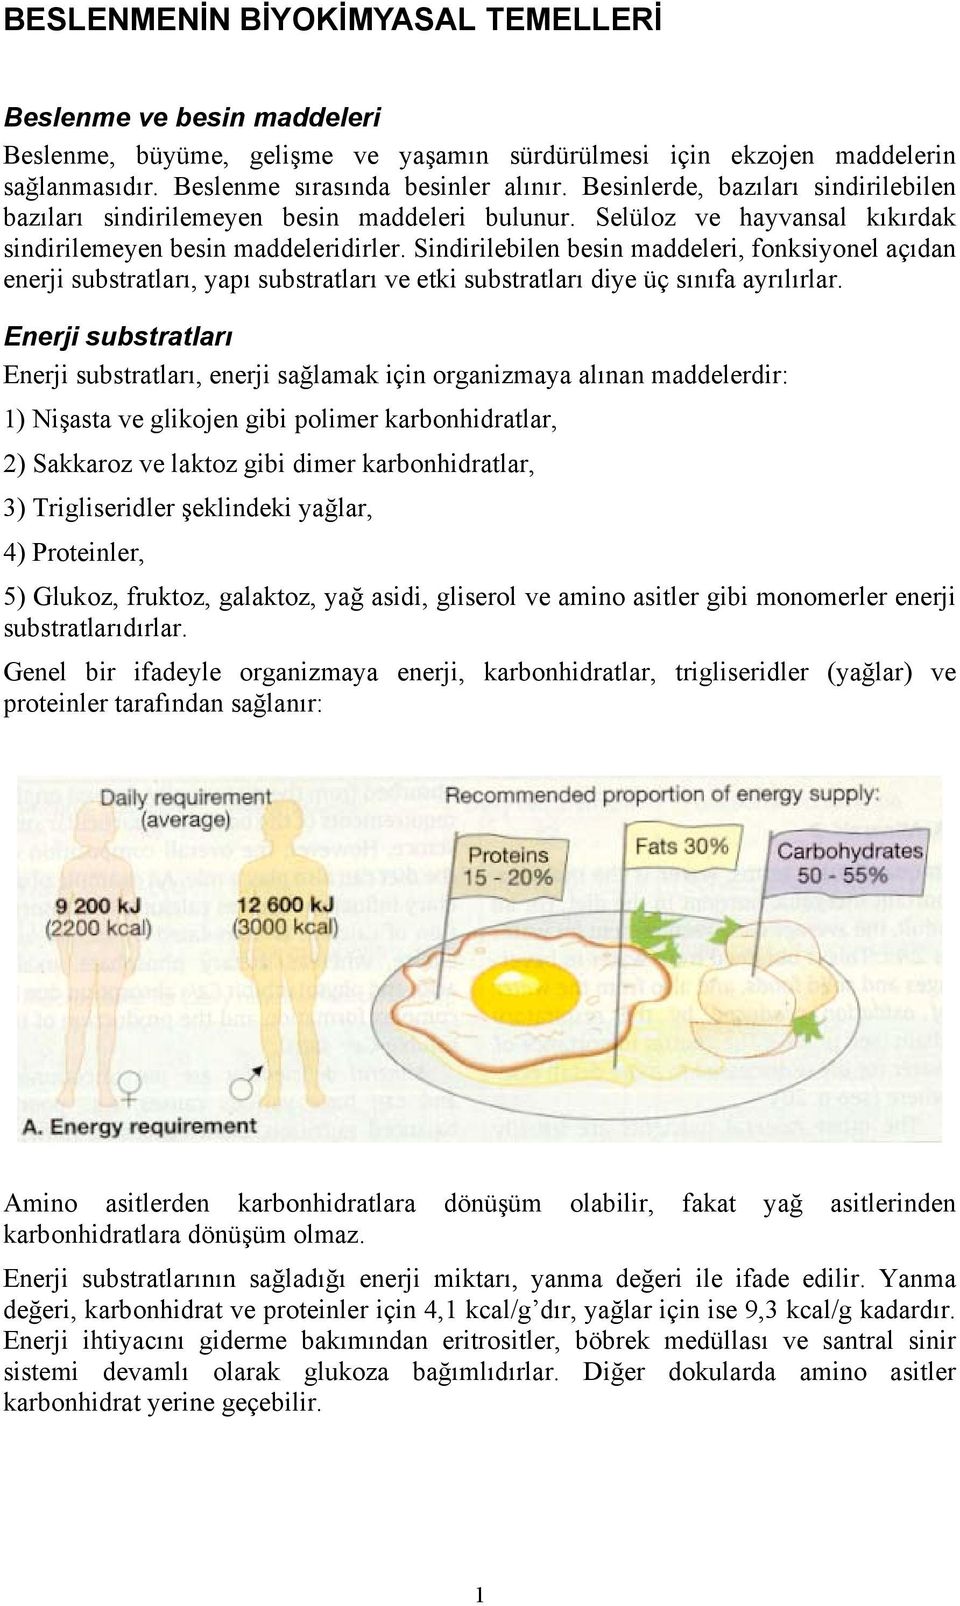 Sindirilebilen besin maddeleri, fonksiyonel açıdan enerji substratları, yapı substratları ve etki substratları diye üç sınıfa ayrılırlar.